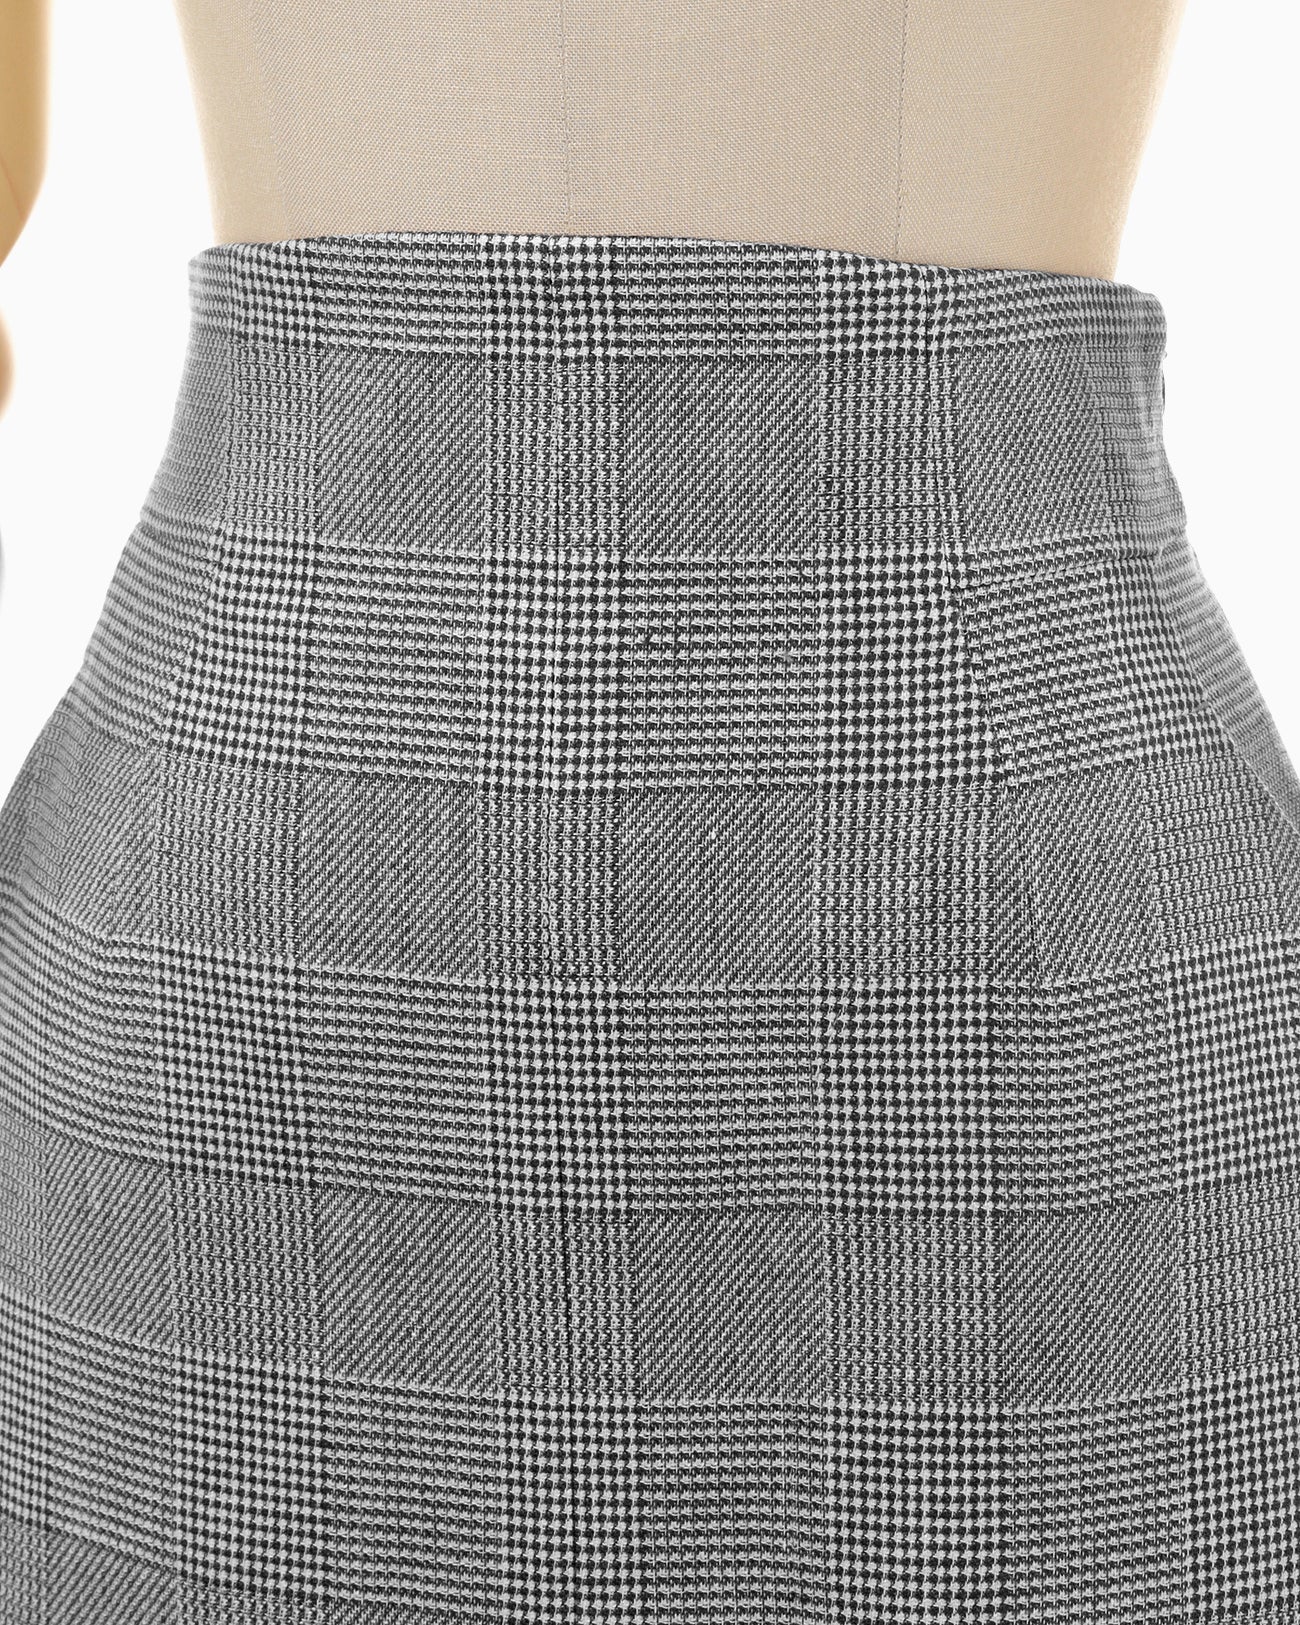 Houndstooth Geometric Plaid Skirt - black - Mame Kurogouchi